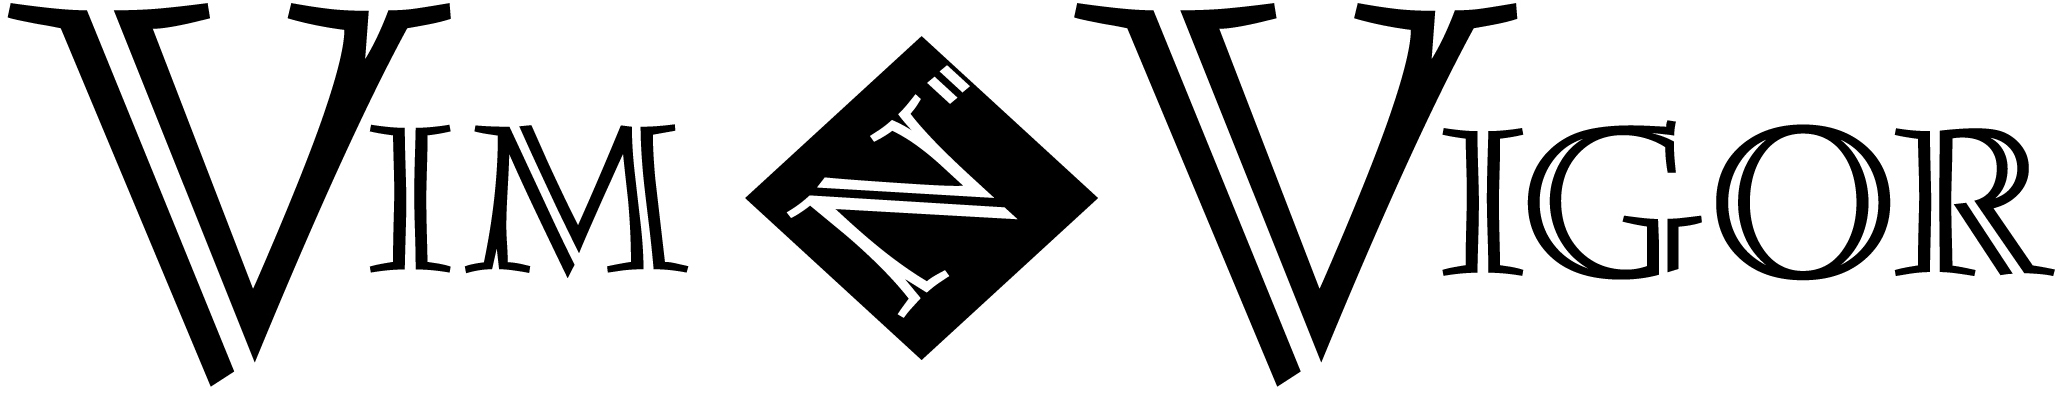 Vim N'Vigor Logo